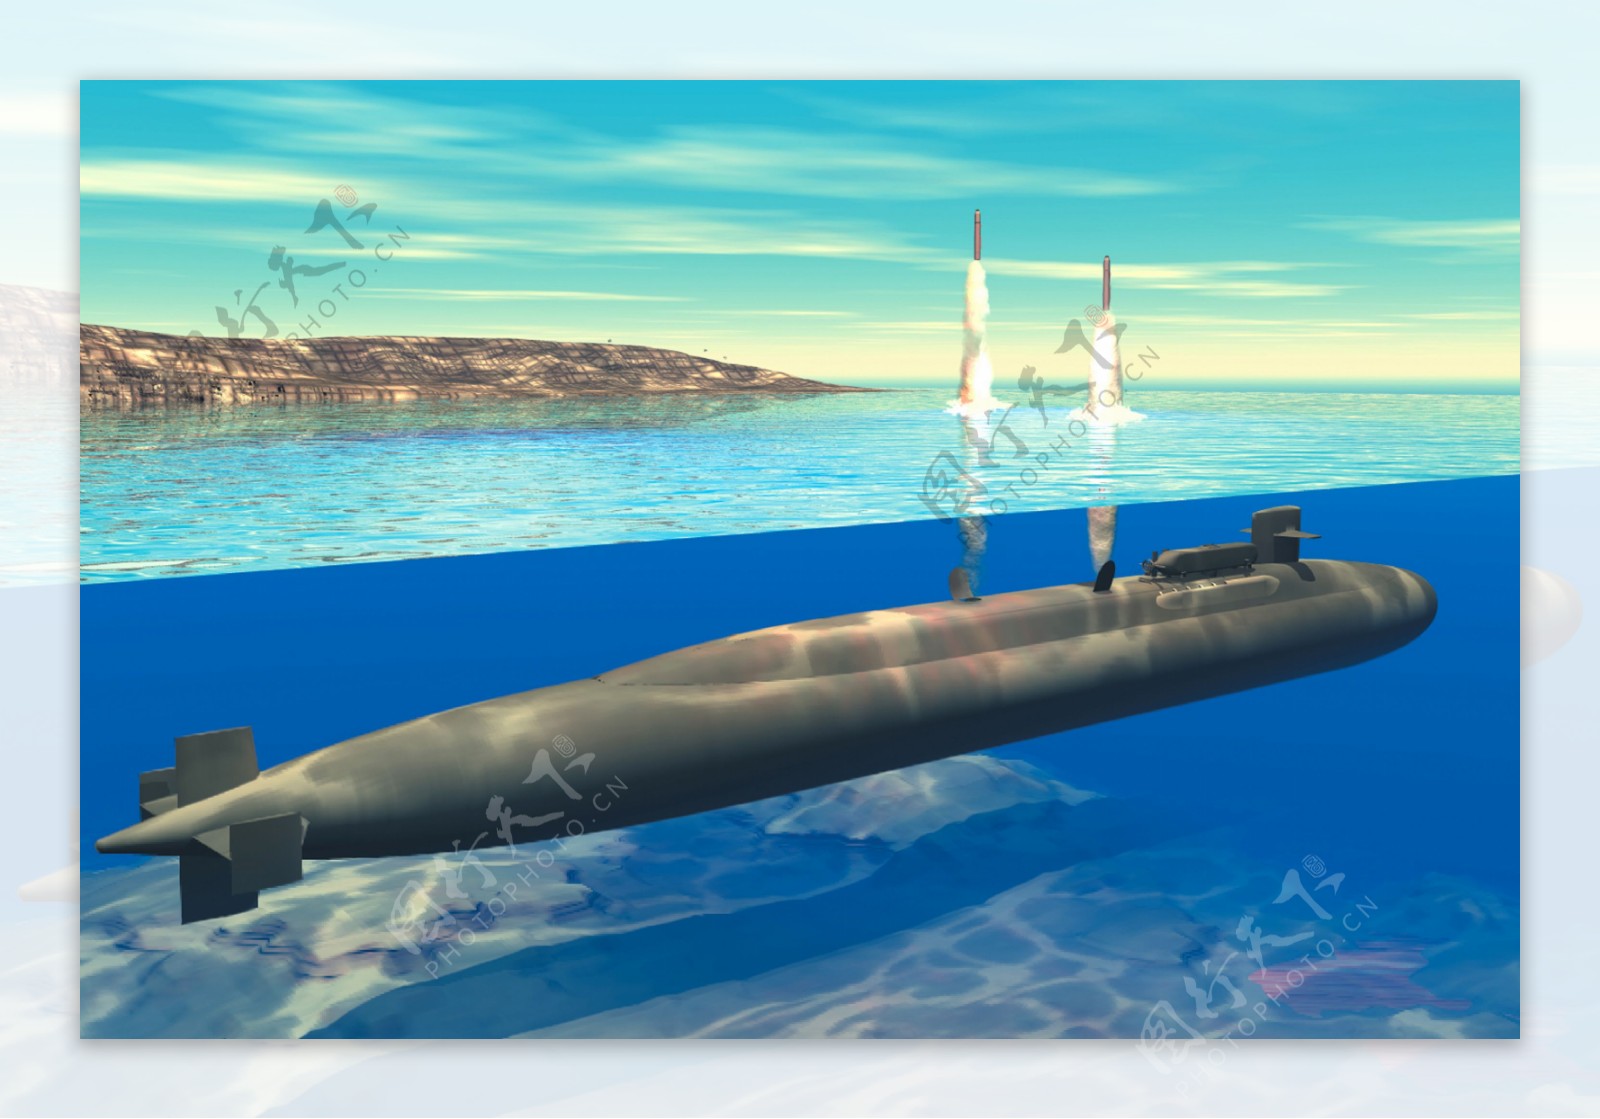 发射导弹的核潜艇图片